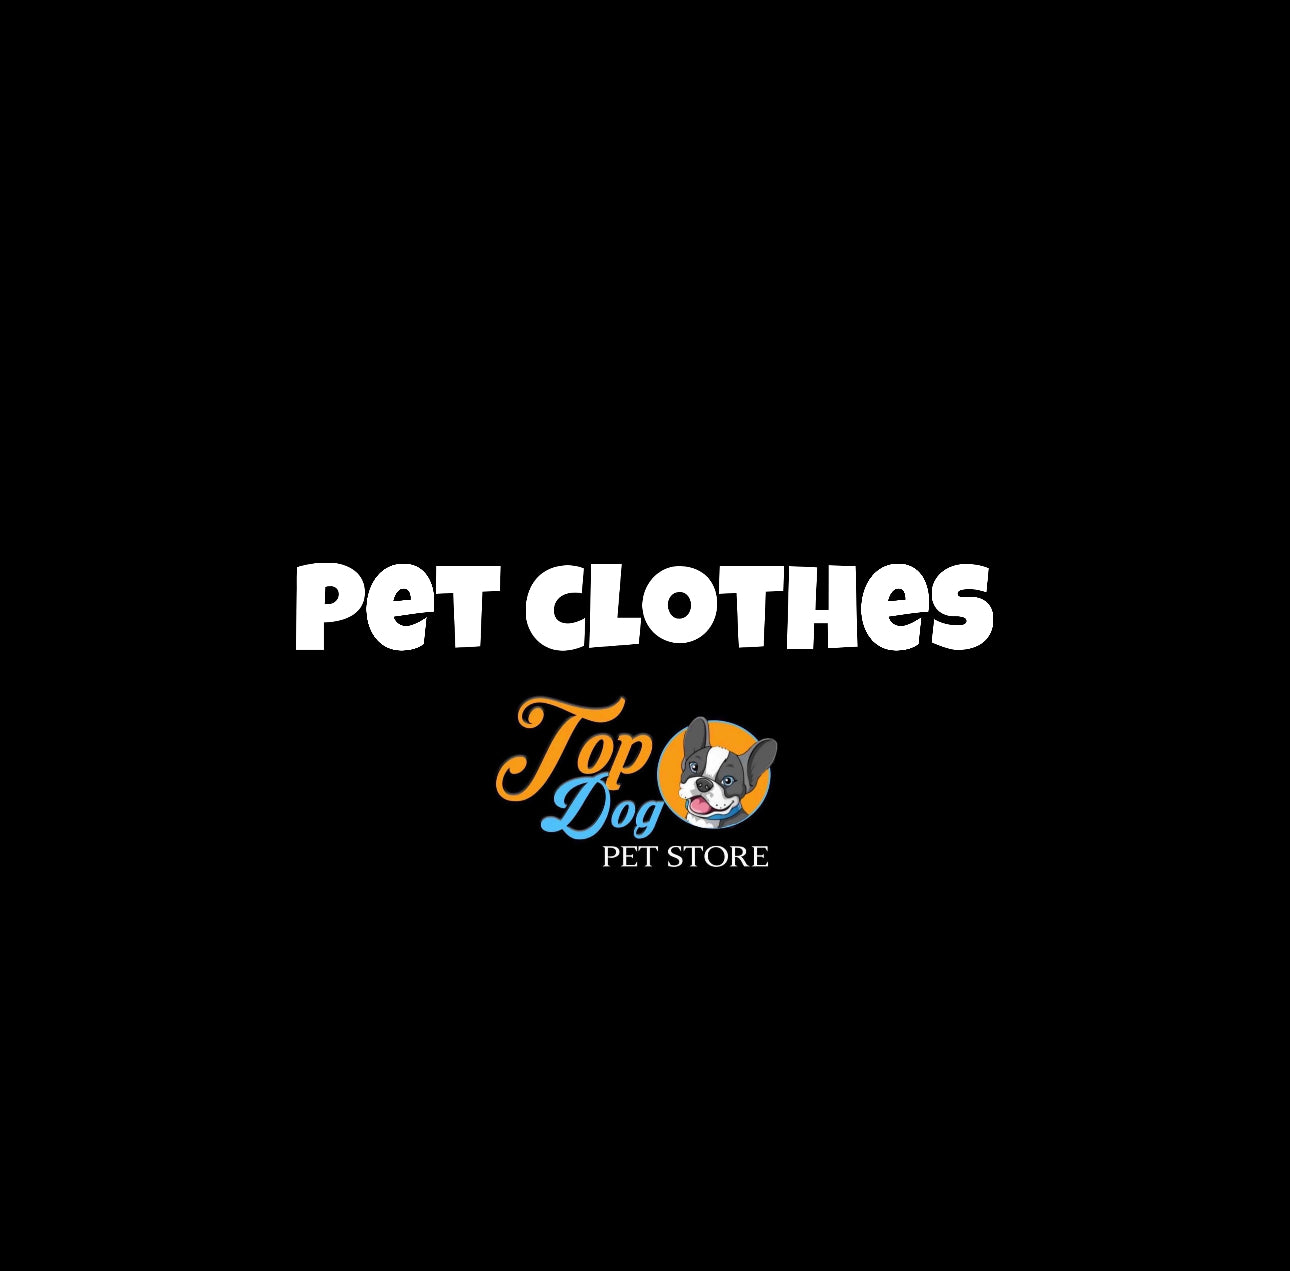 PET CLOTHES